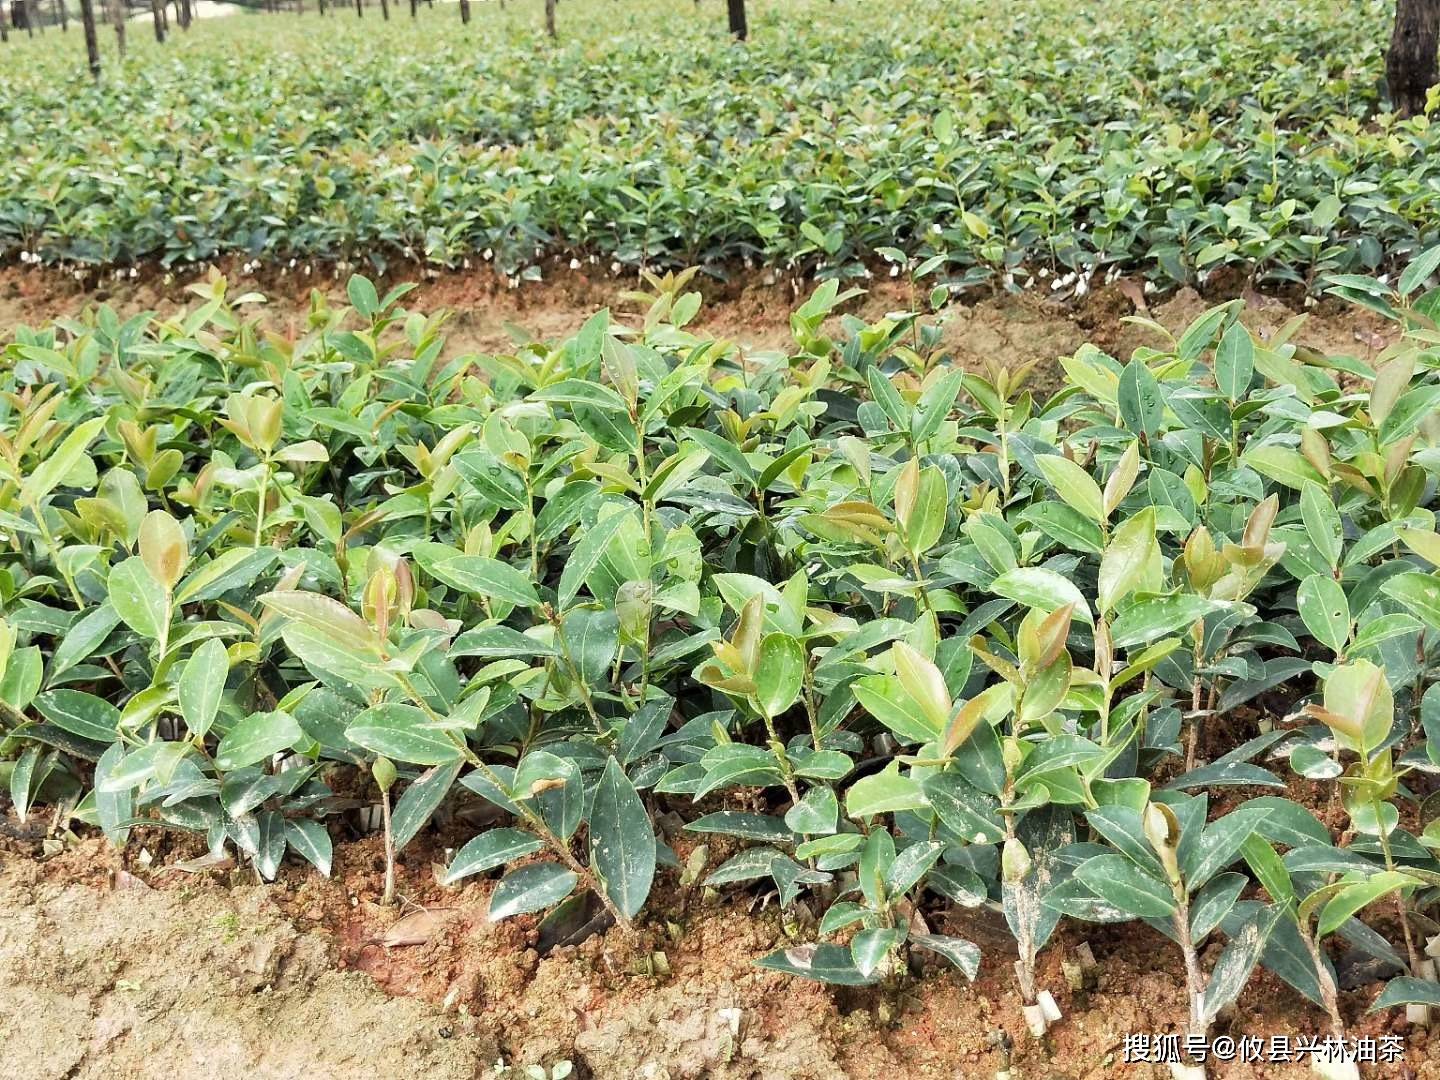 2,施肥种类油茶苗常用的肥料包括:人粪尿,厩肥,绿肥,菜枯,尿素,钙镁